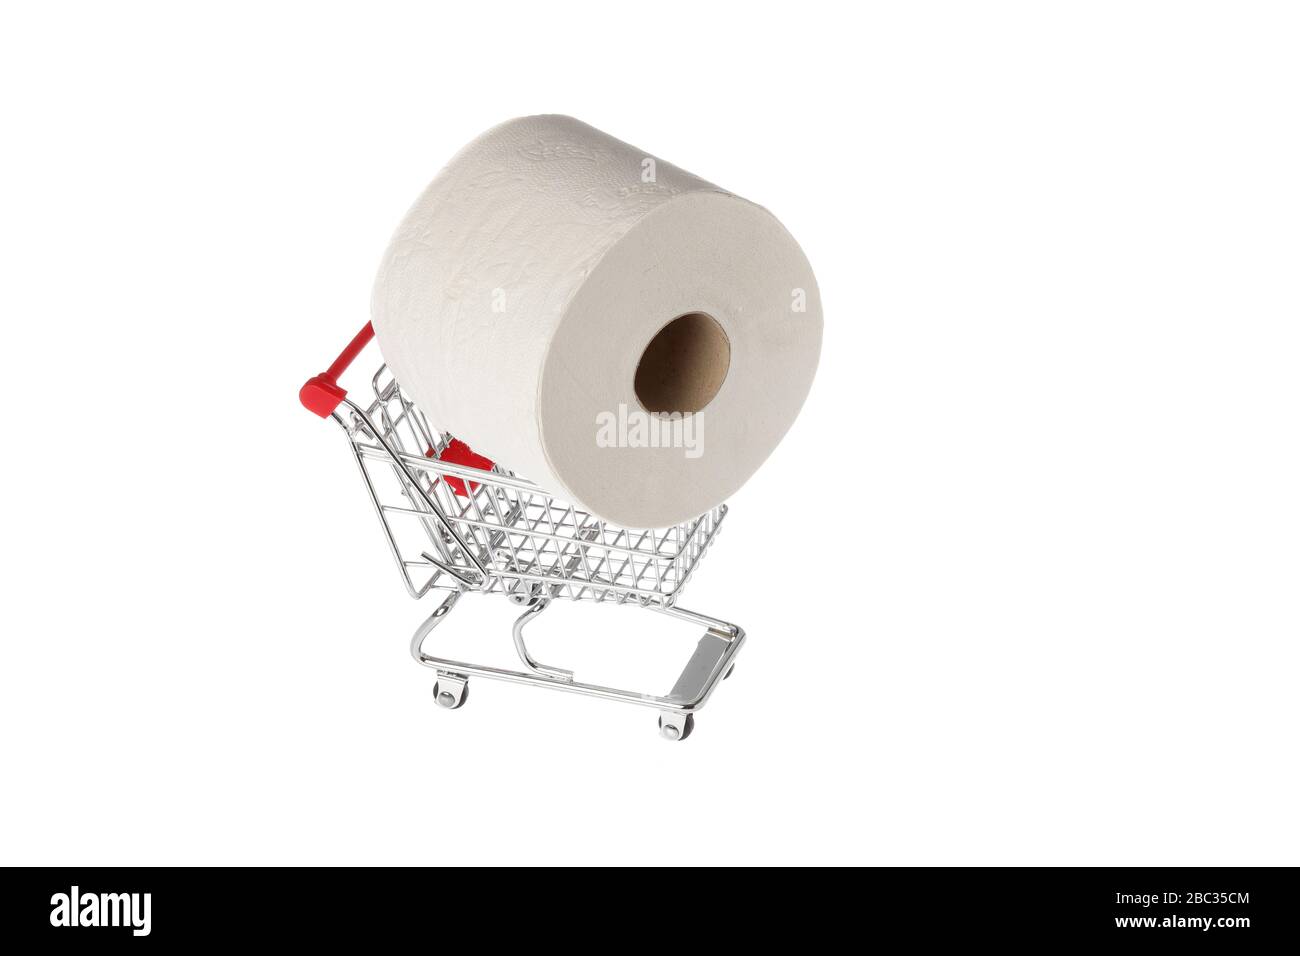 Un rouleau de papier toilette grand public dans un panier miniature isolé sur fond blanc. Banque D'Images